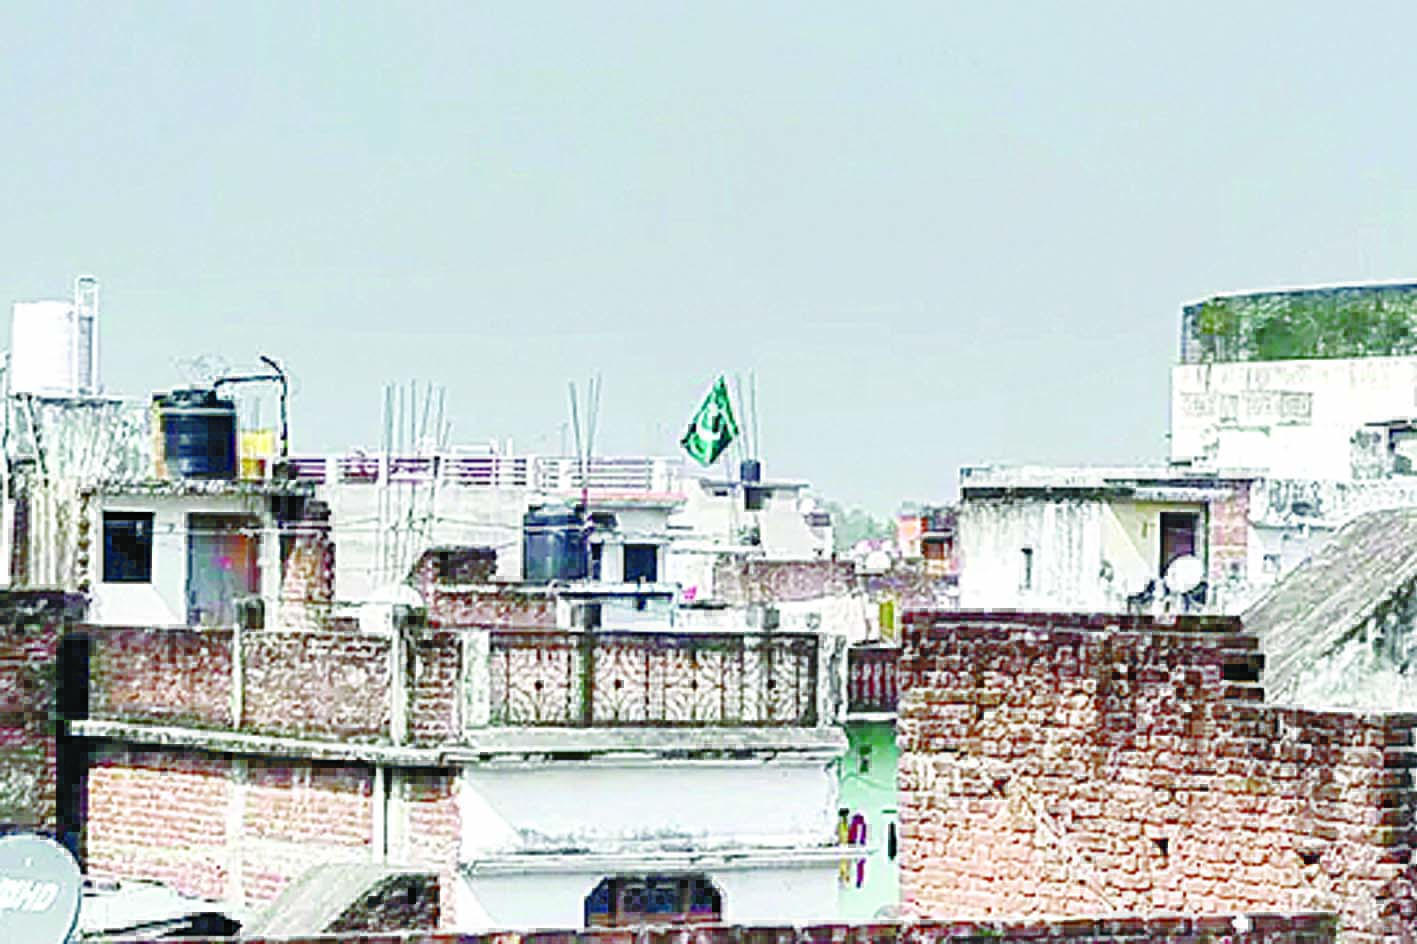 गोरखपुर: पाकिस्तानी झंडा लगाने को लेकर तनाव, 4 पर राजद्रोह का केस दर्ज